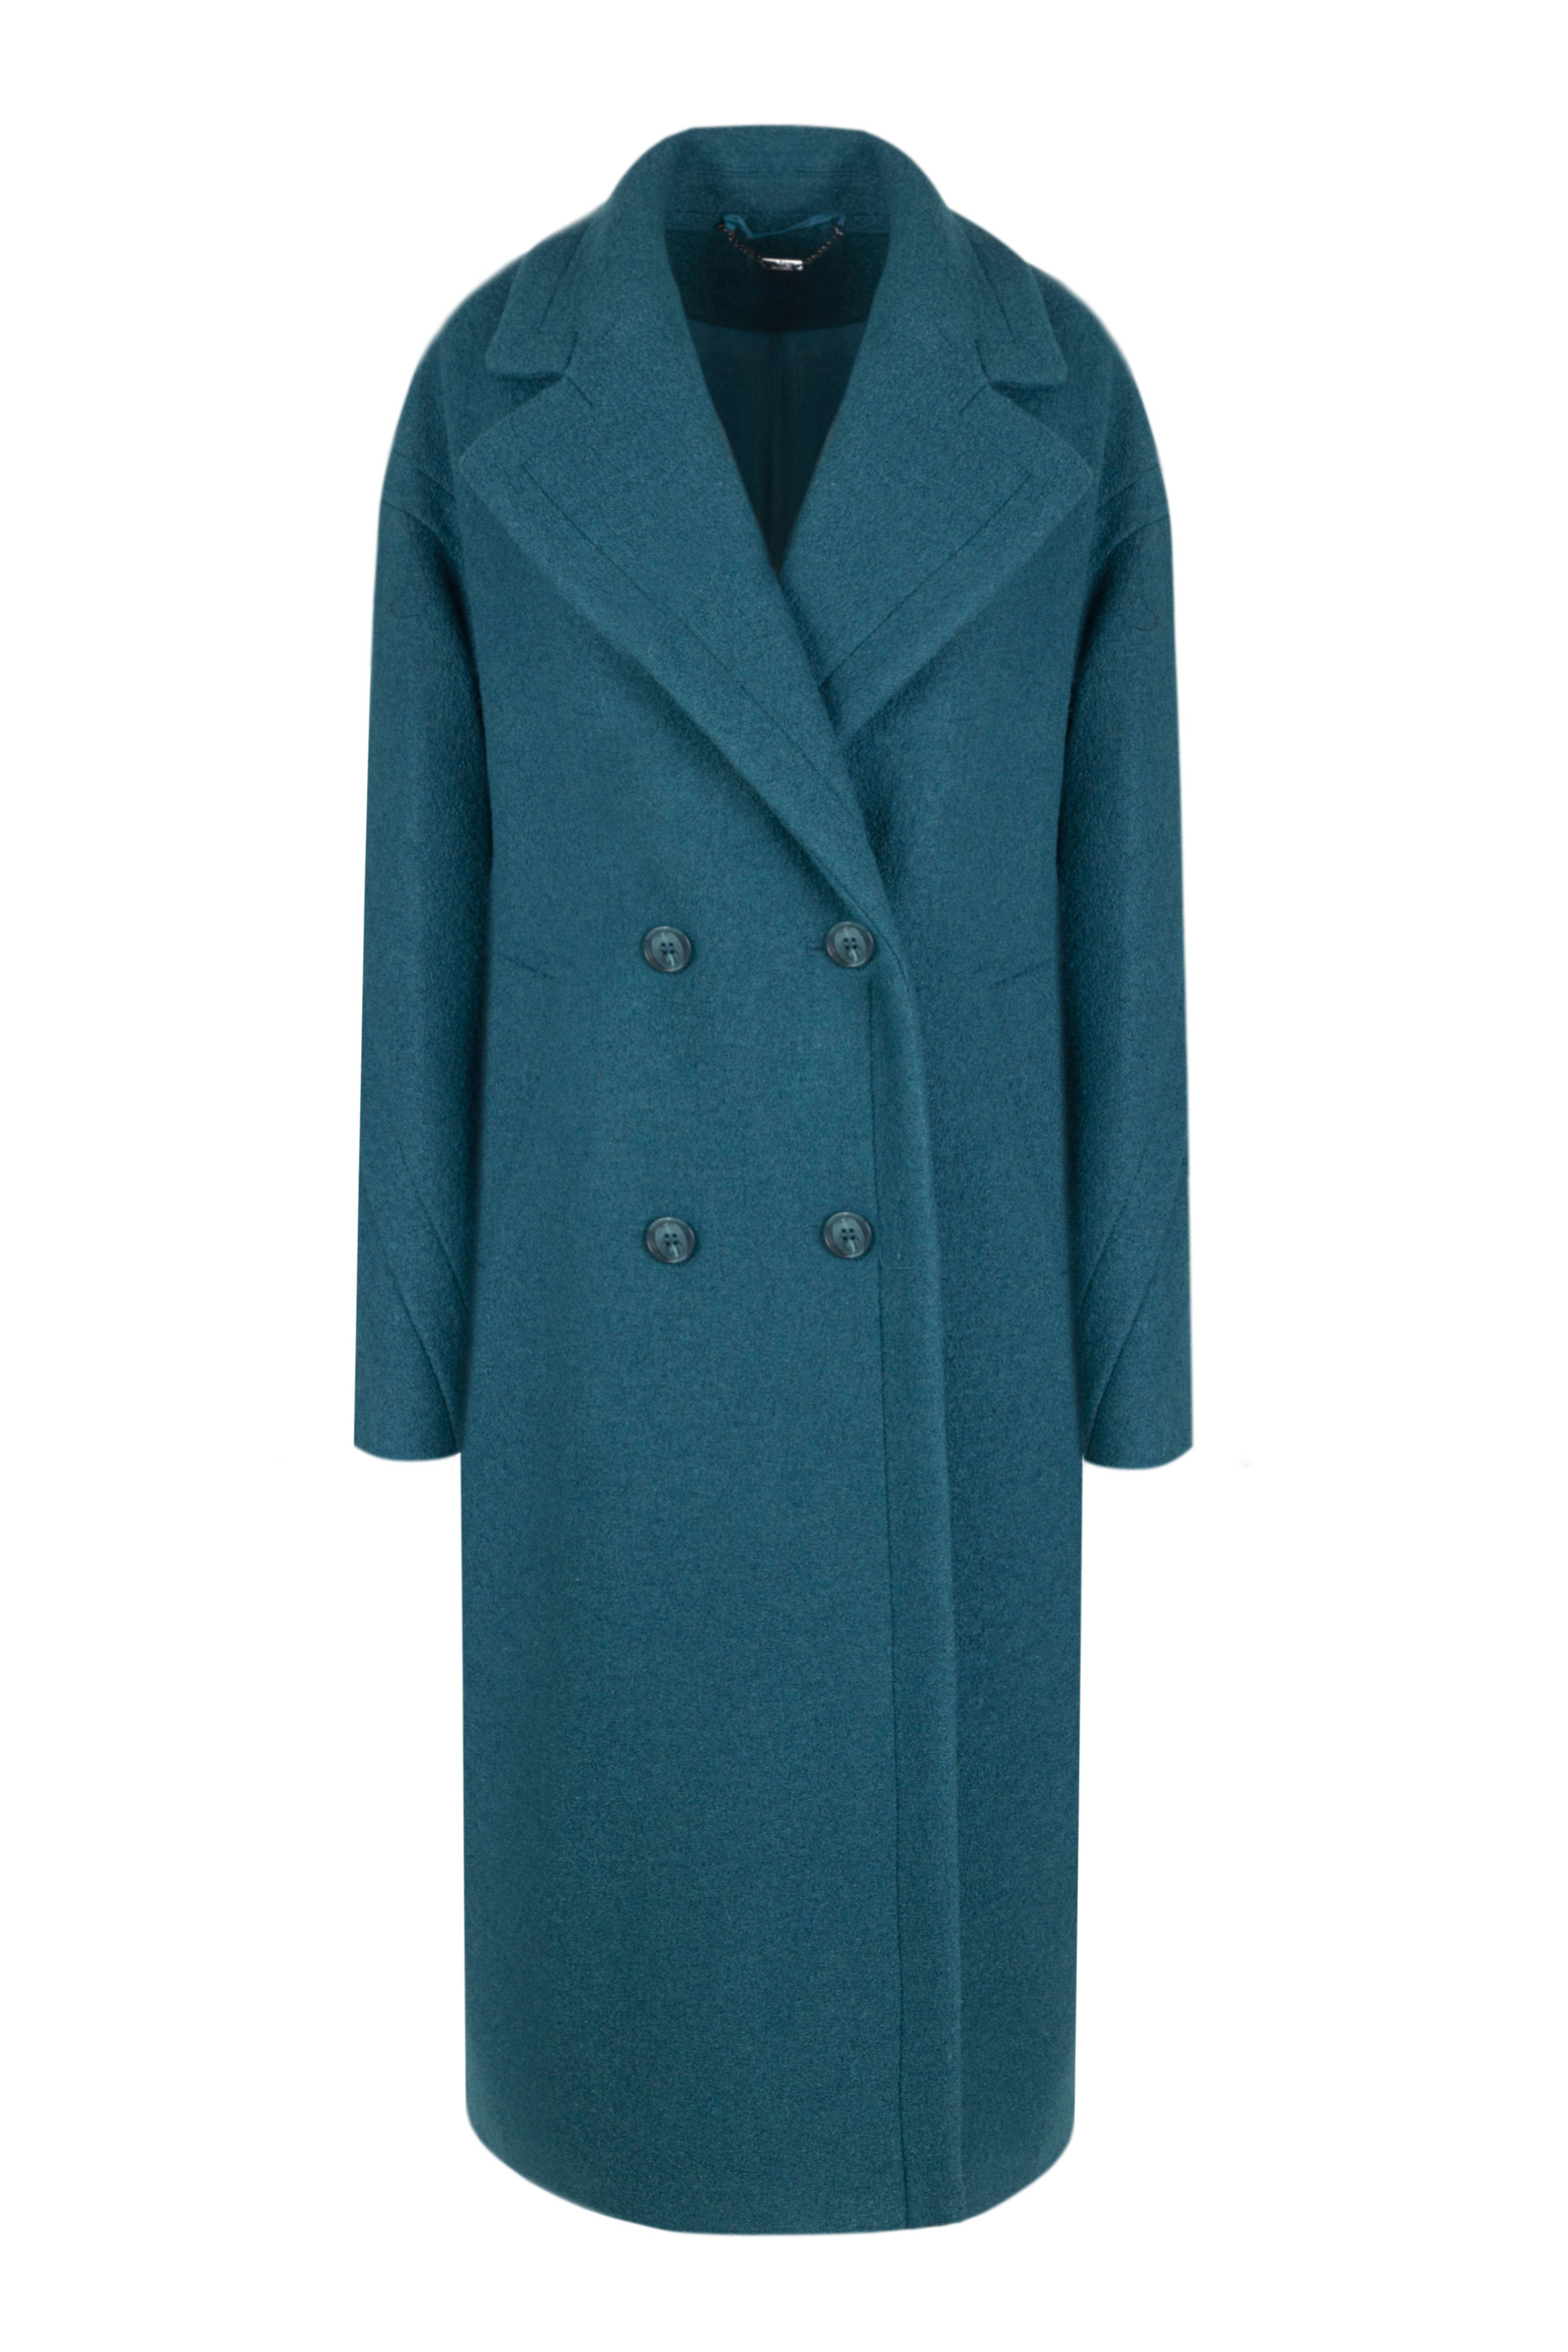 Пальто женское демисезонное 1-94. Фото 5.